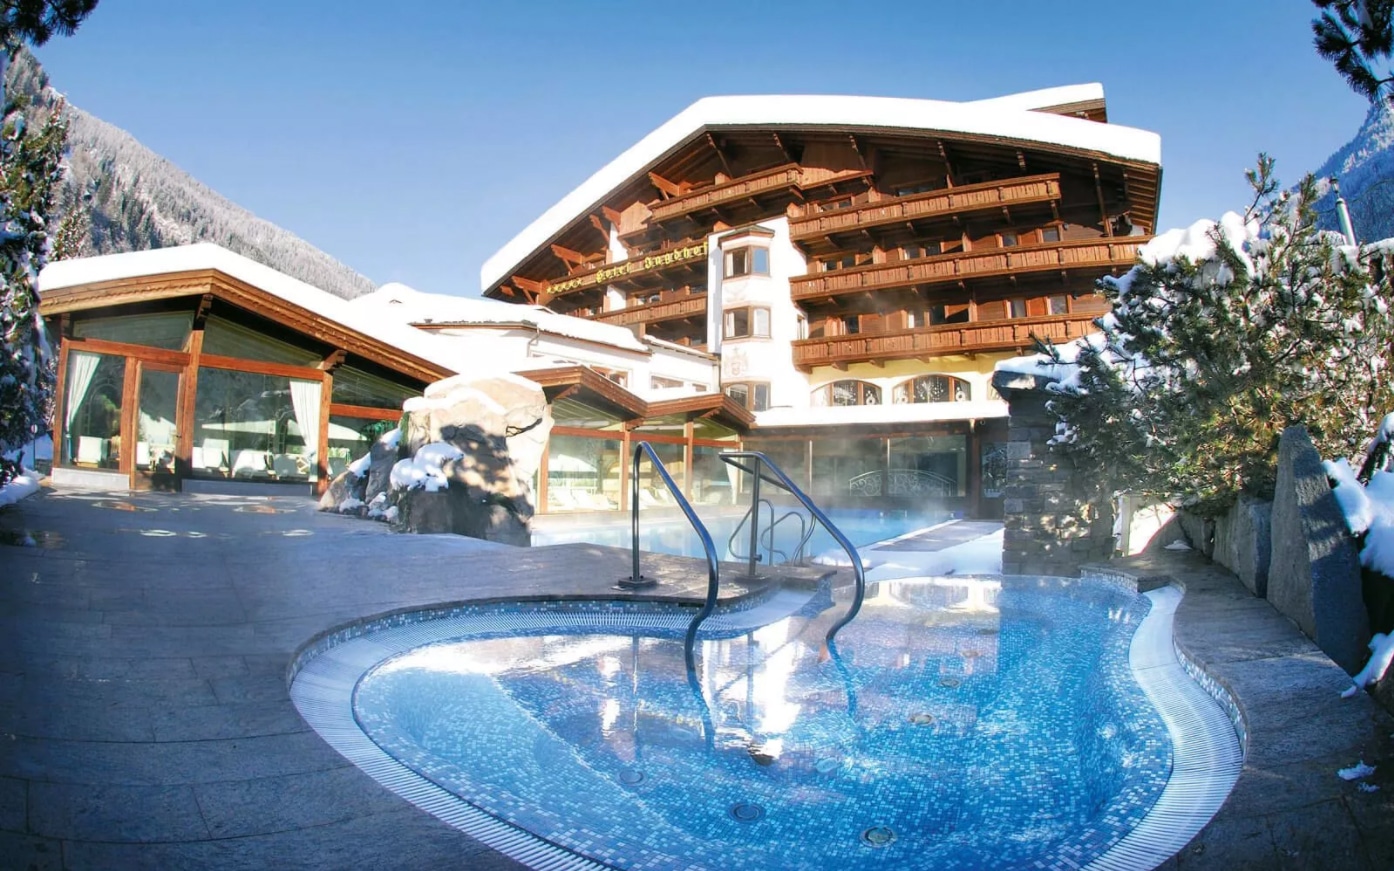 SPA-HOTEL Jagdhof, in Neustift,Tirol im Winter - Au0enansicht mit Pool